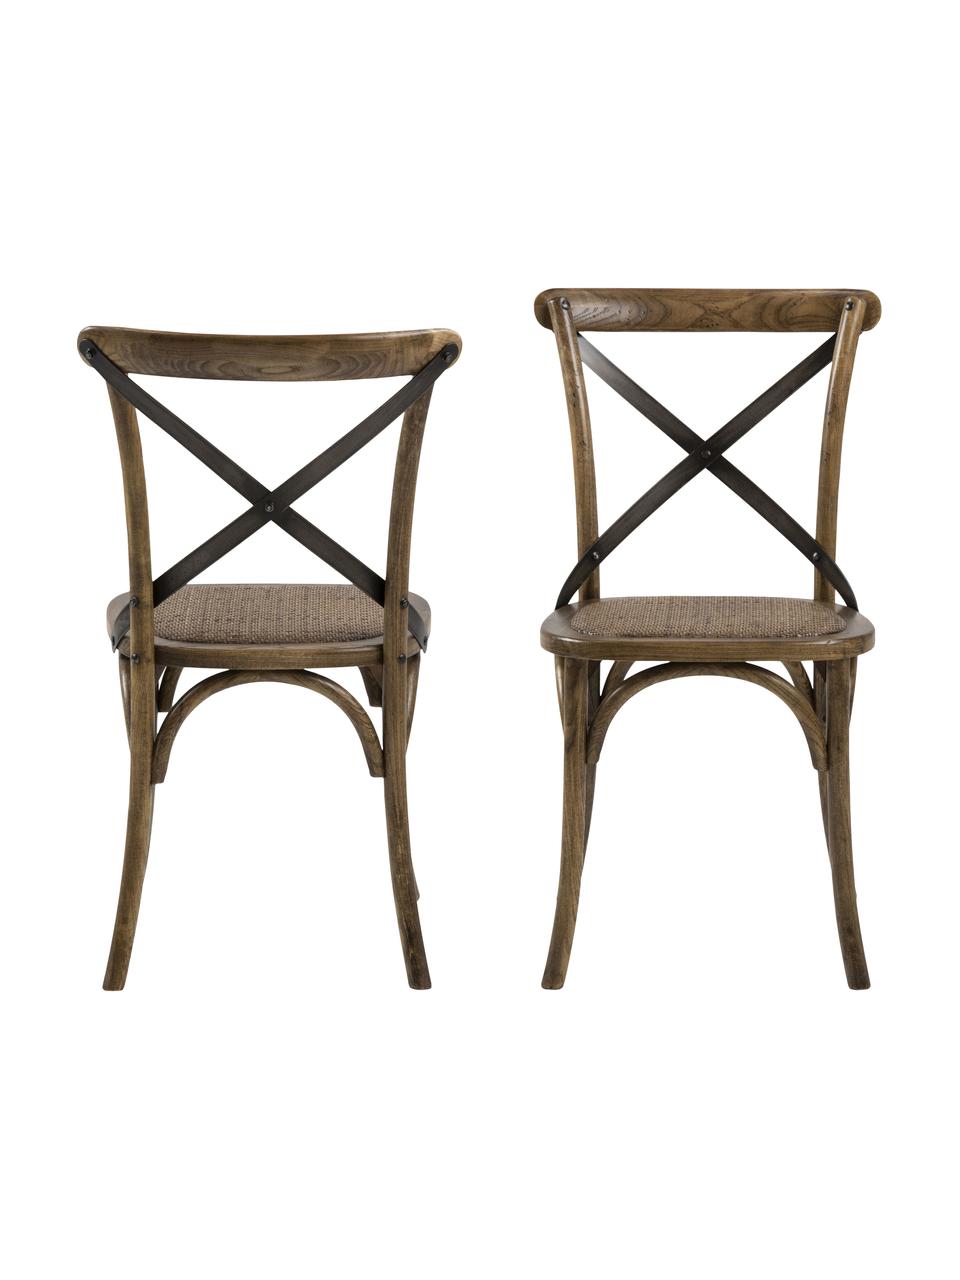 Drevená stolička s ratanovým sedadlom Vintage, Brezové drevo, Š 49 x H 55 cm